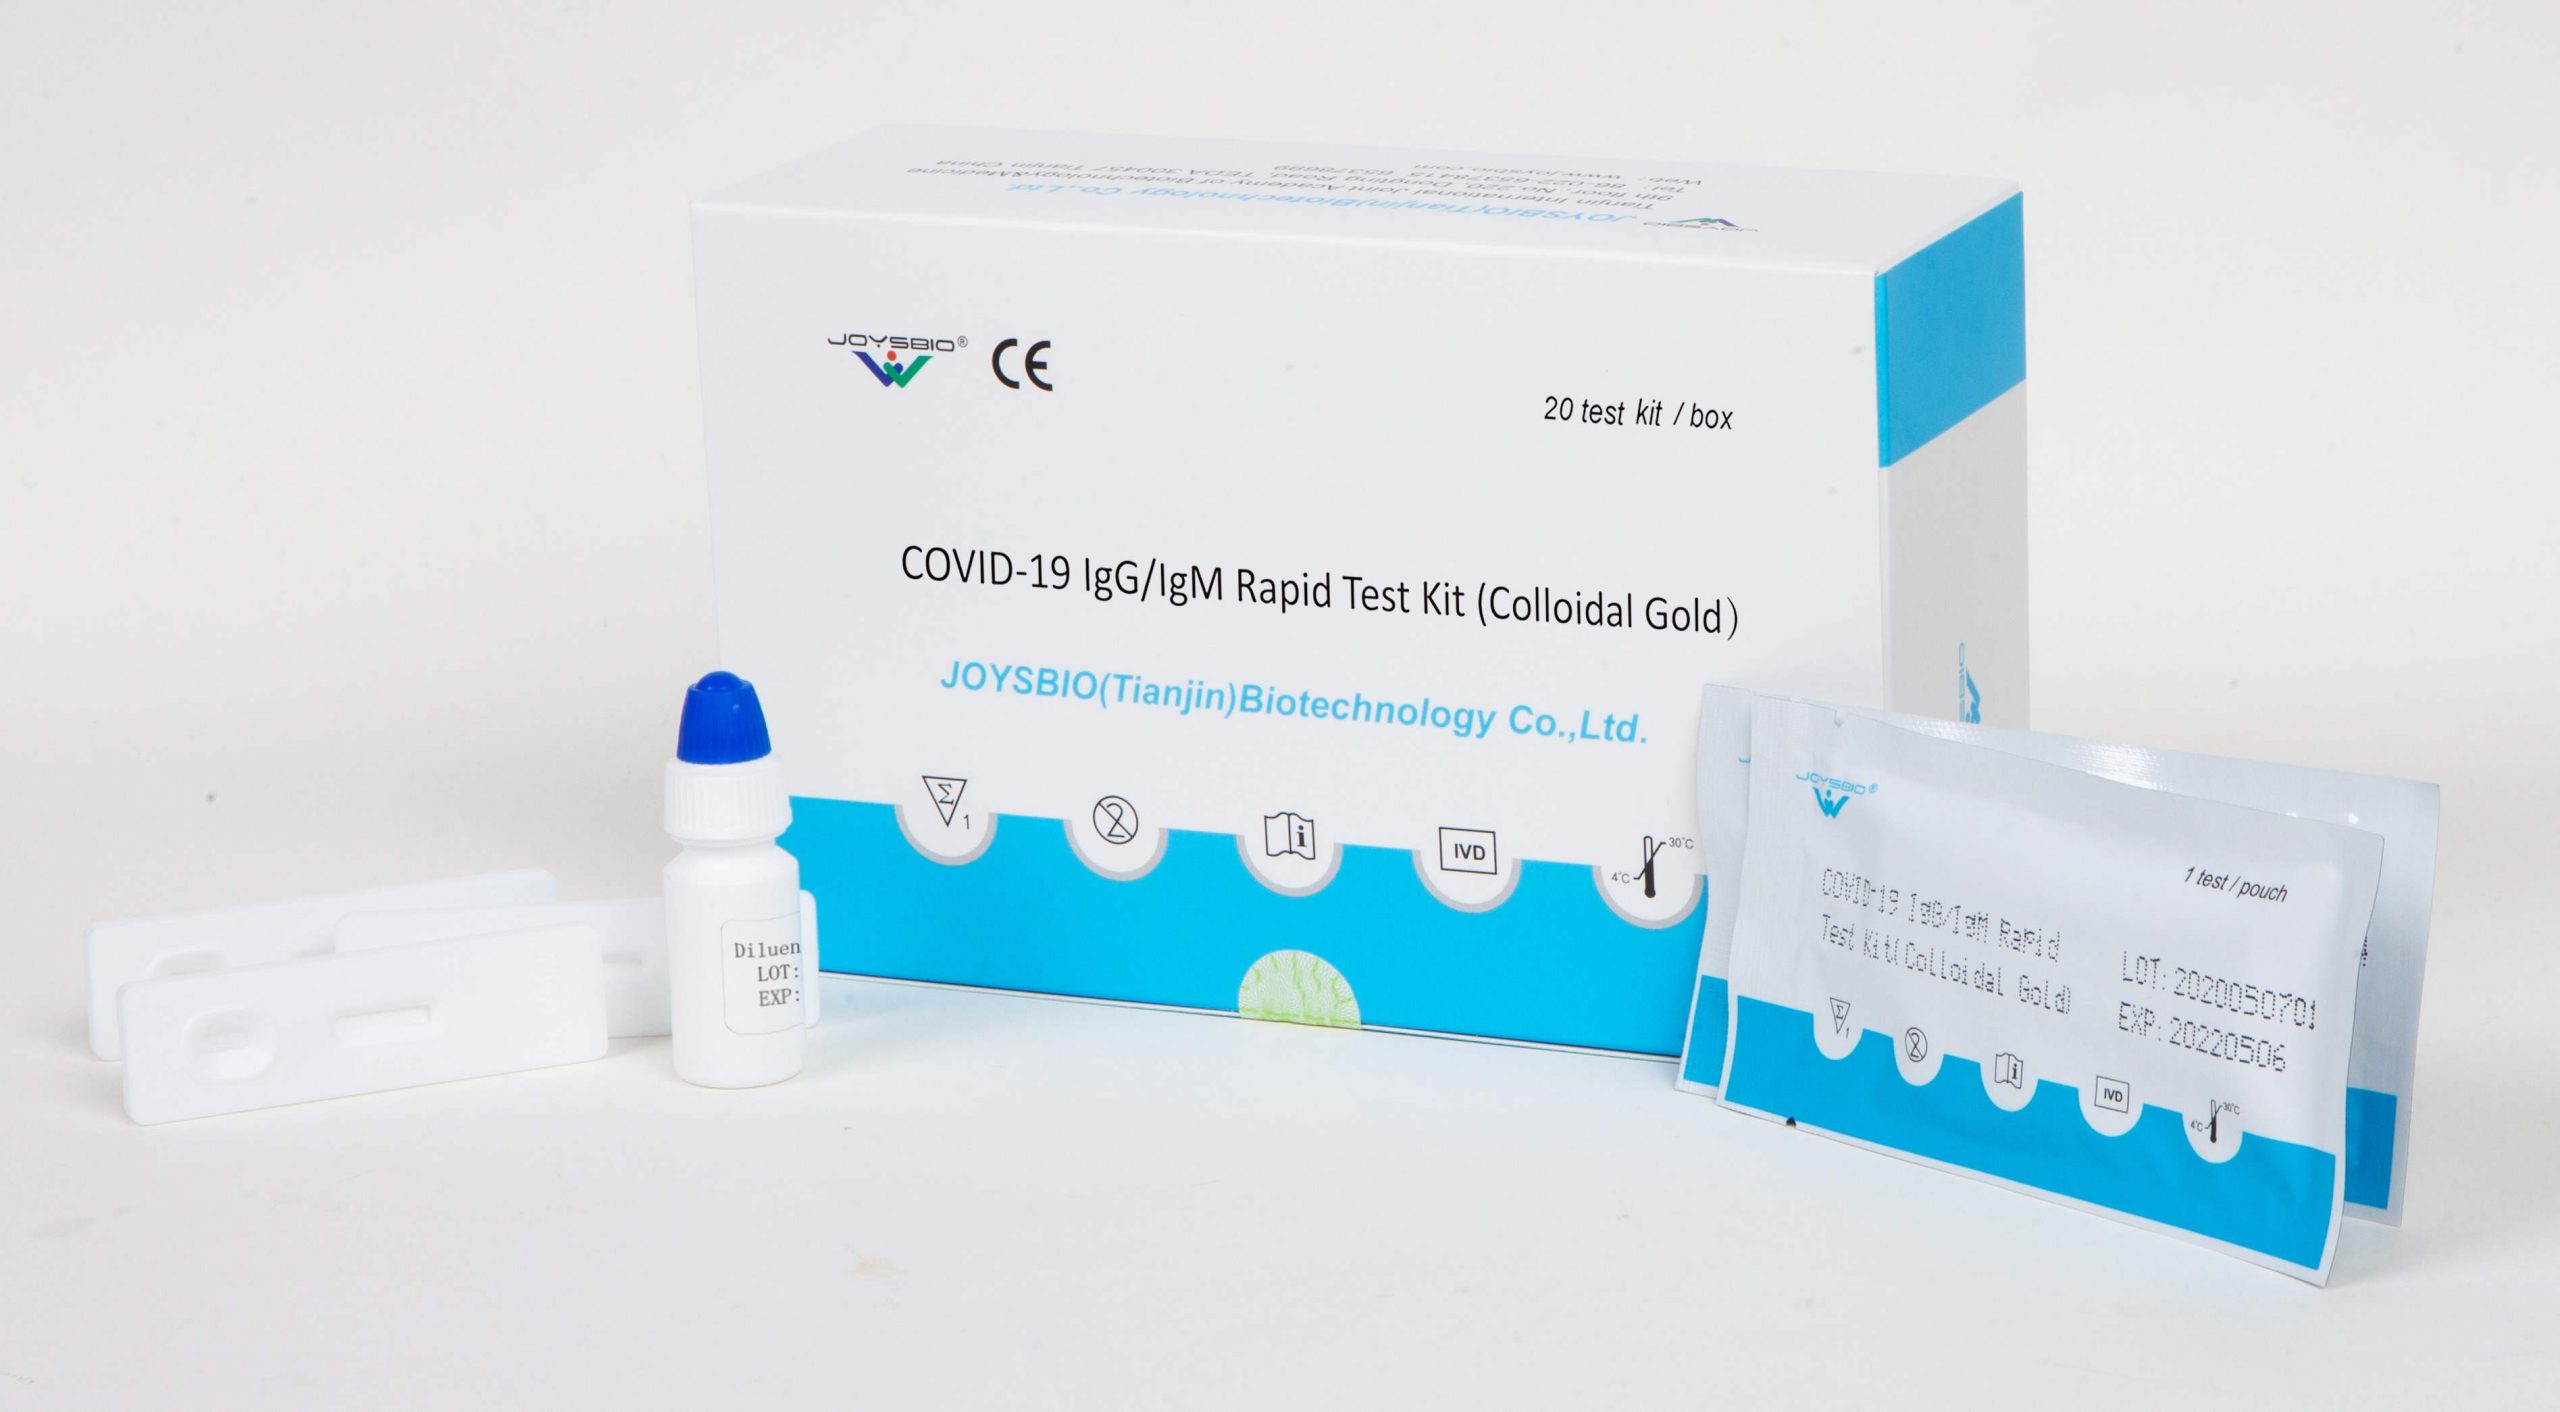 Антиген тесты covid 19. Covid-19 antigen Rapid Test Kit. Covid-19 antigen Test Kit Colloidal Gold. Covid antigen Rapid Test Kit Colloidal Gold. Gensure Covid-19 antigen Rapid Test Kit instructions.